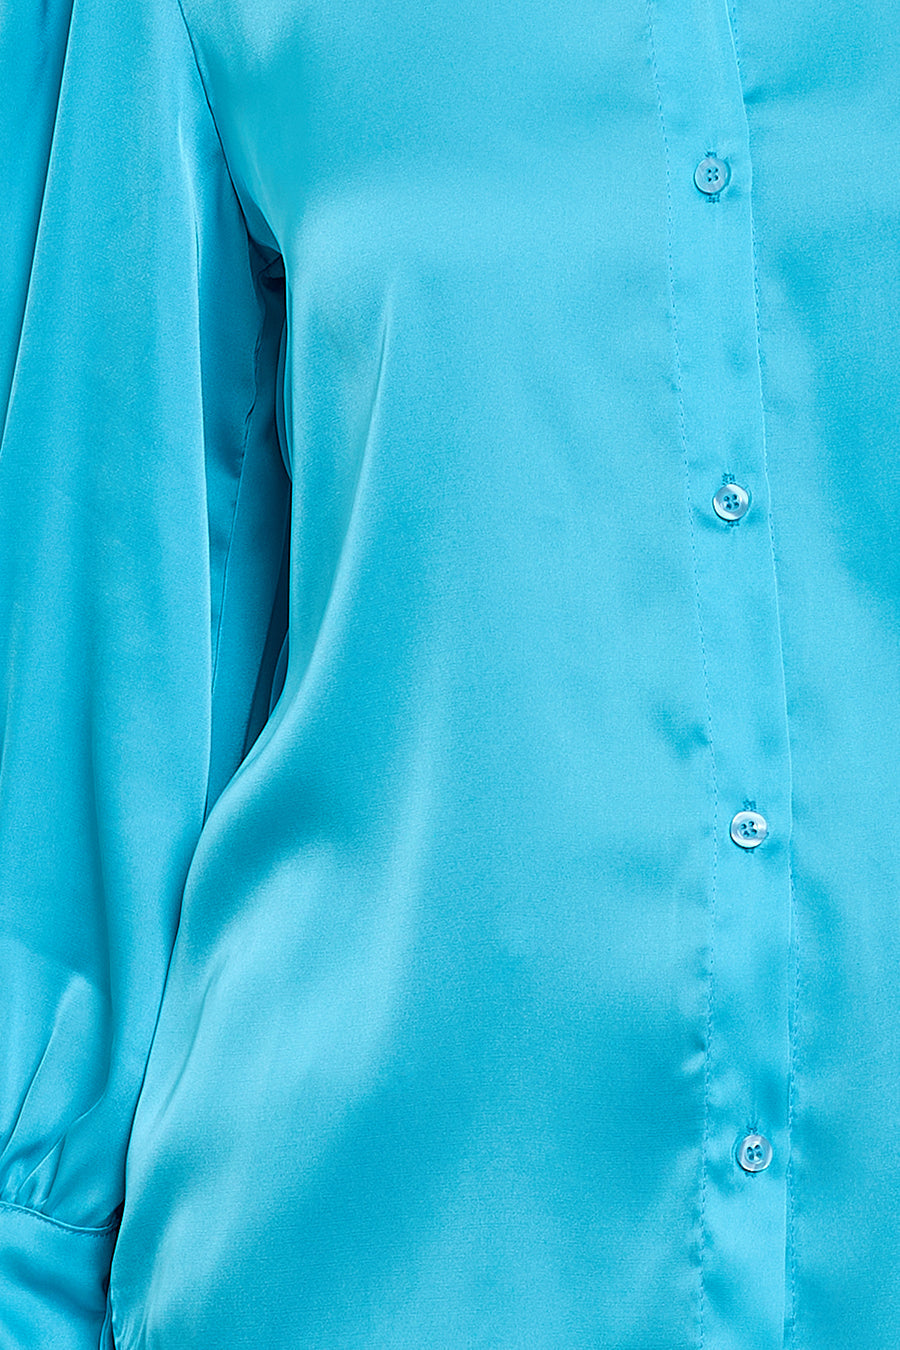 Γυναικείο πουκάμισο Kira, Γαλάζιο 2